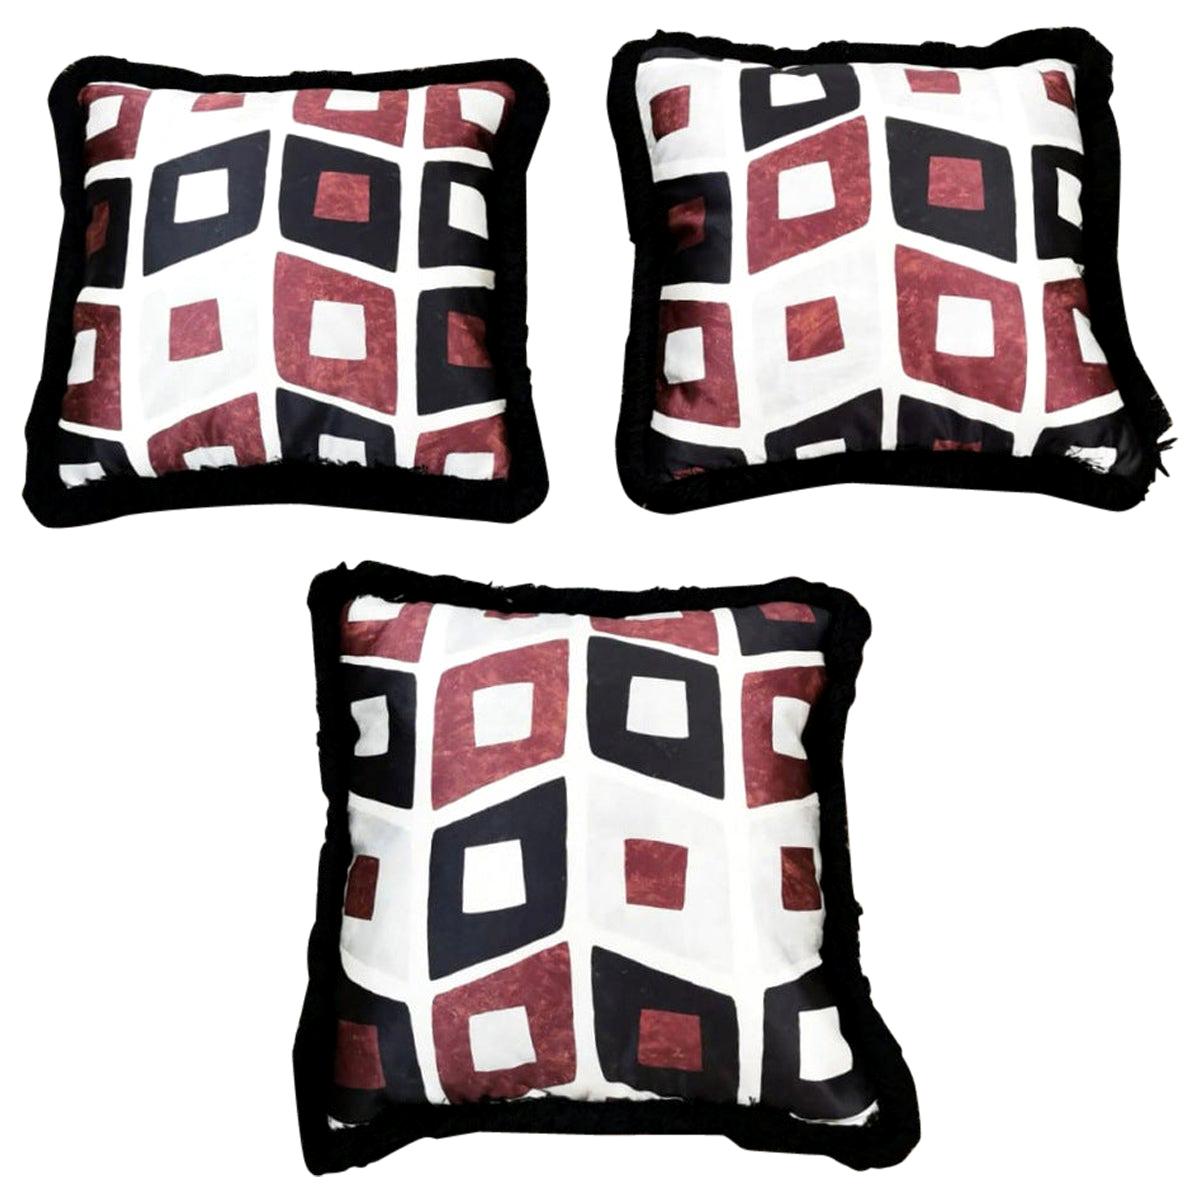 Italian Pillows Handmade in Dedar Satin Fabric and Velvet For Sale